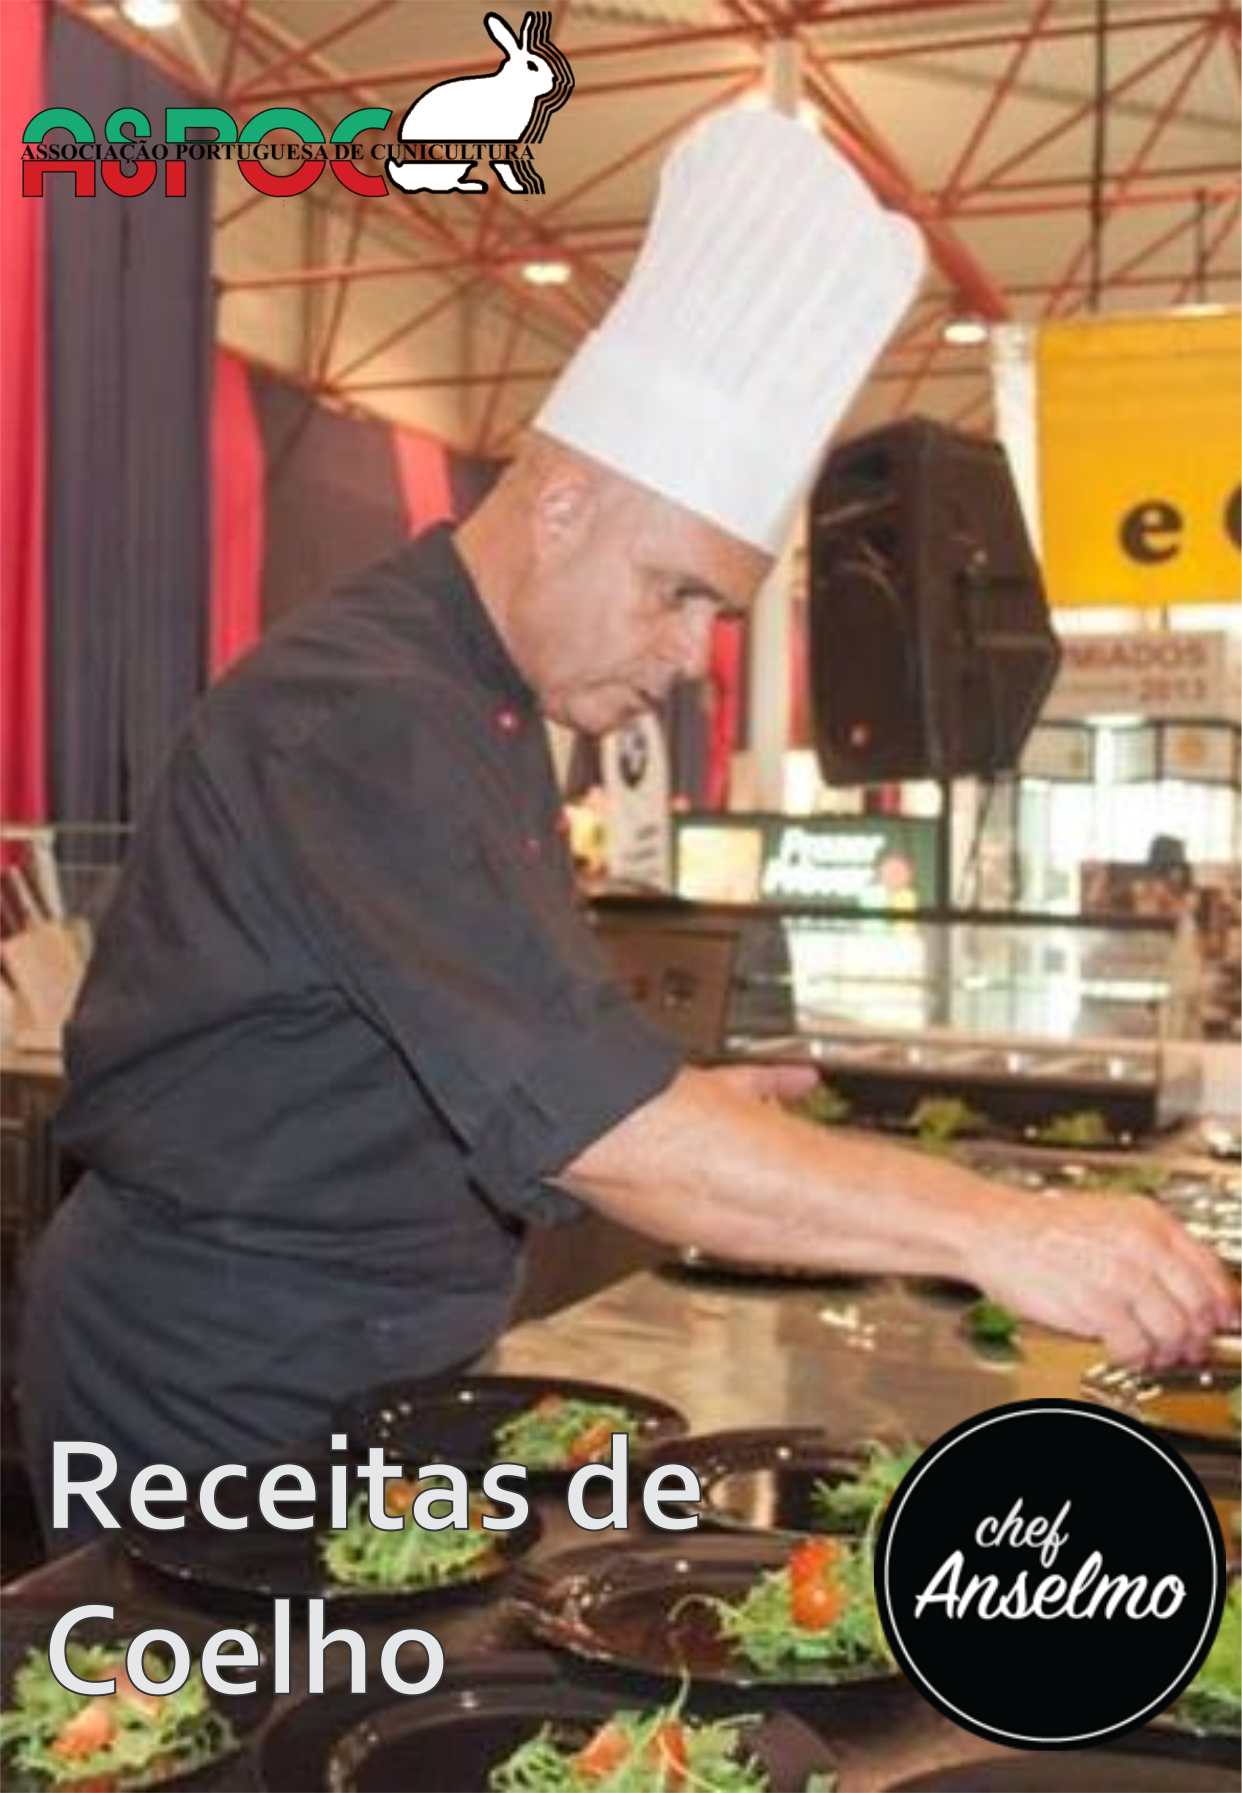 Chef Anselmo – Receitas de Coelho